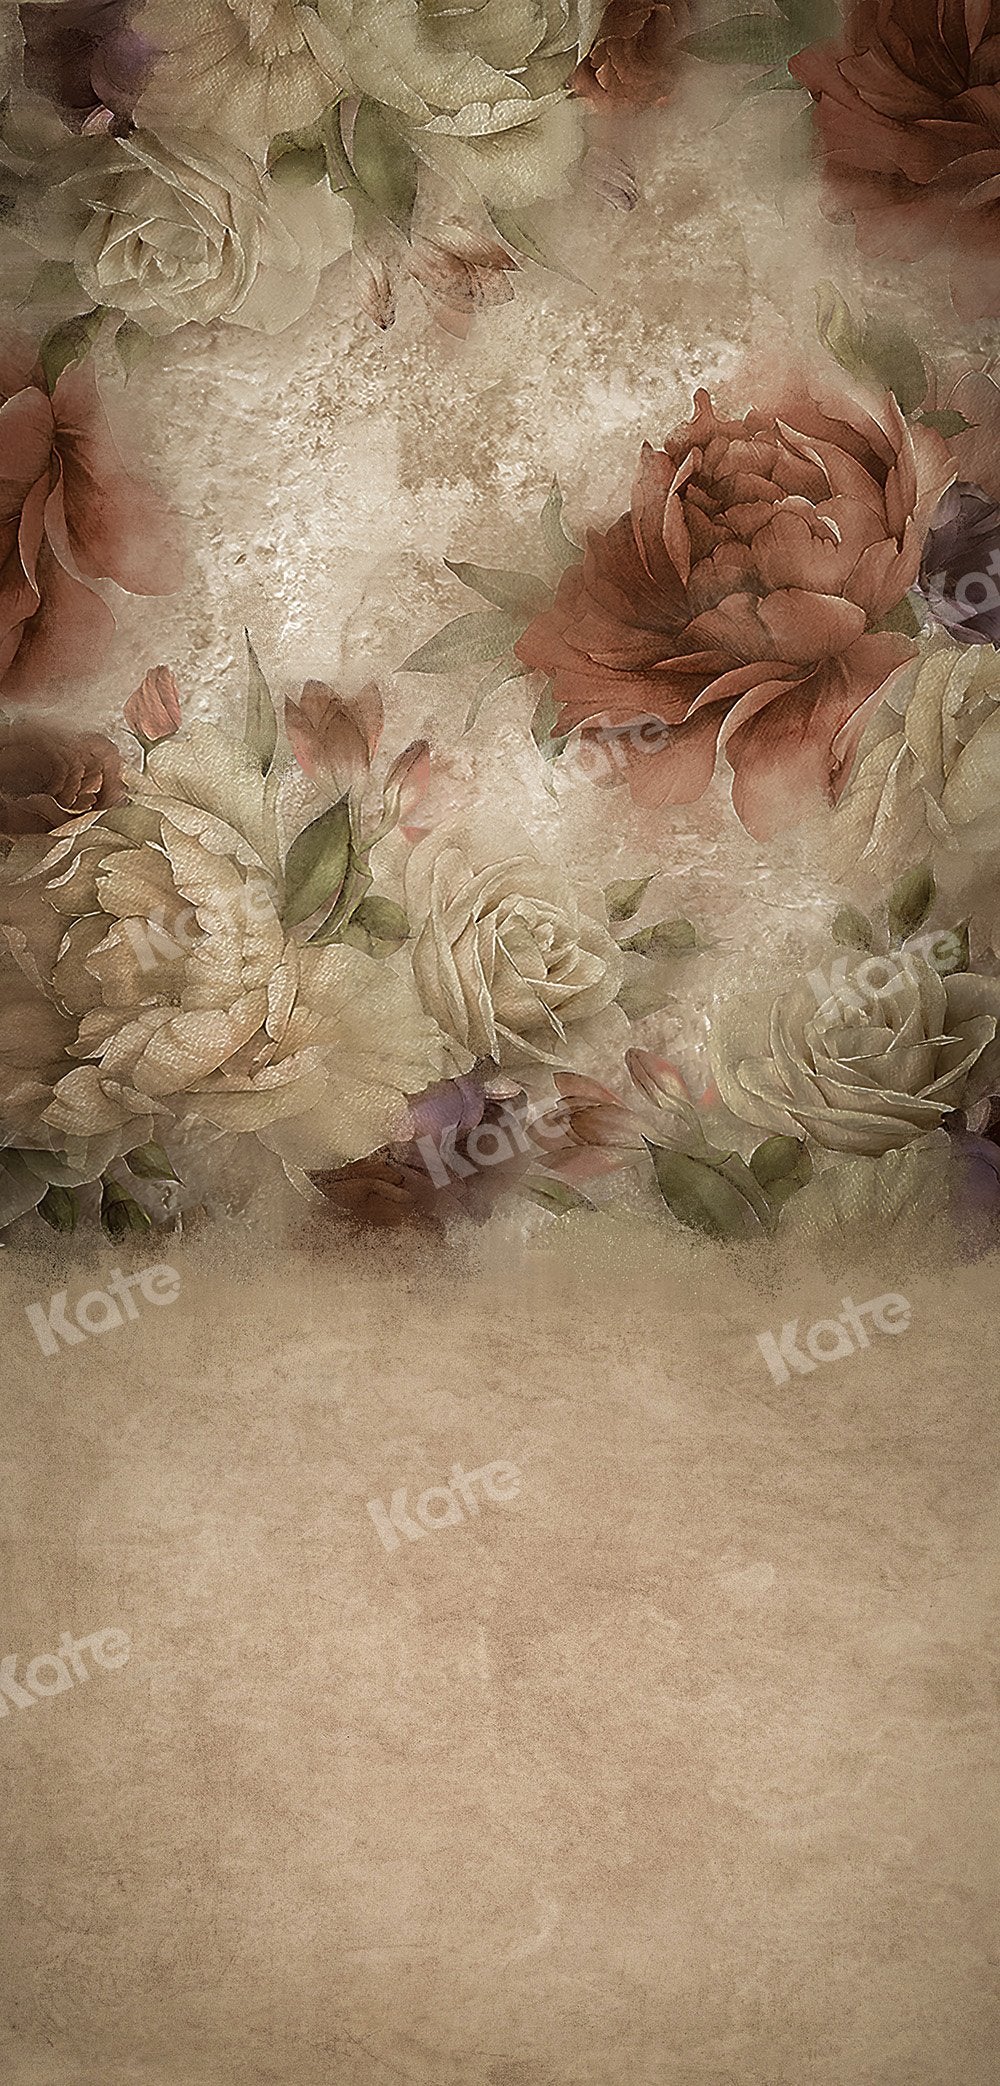 Kate Sweep Fine Art Blumen Blumenpfingstrose Hintergrund für die Fotografie